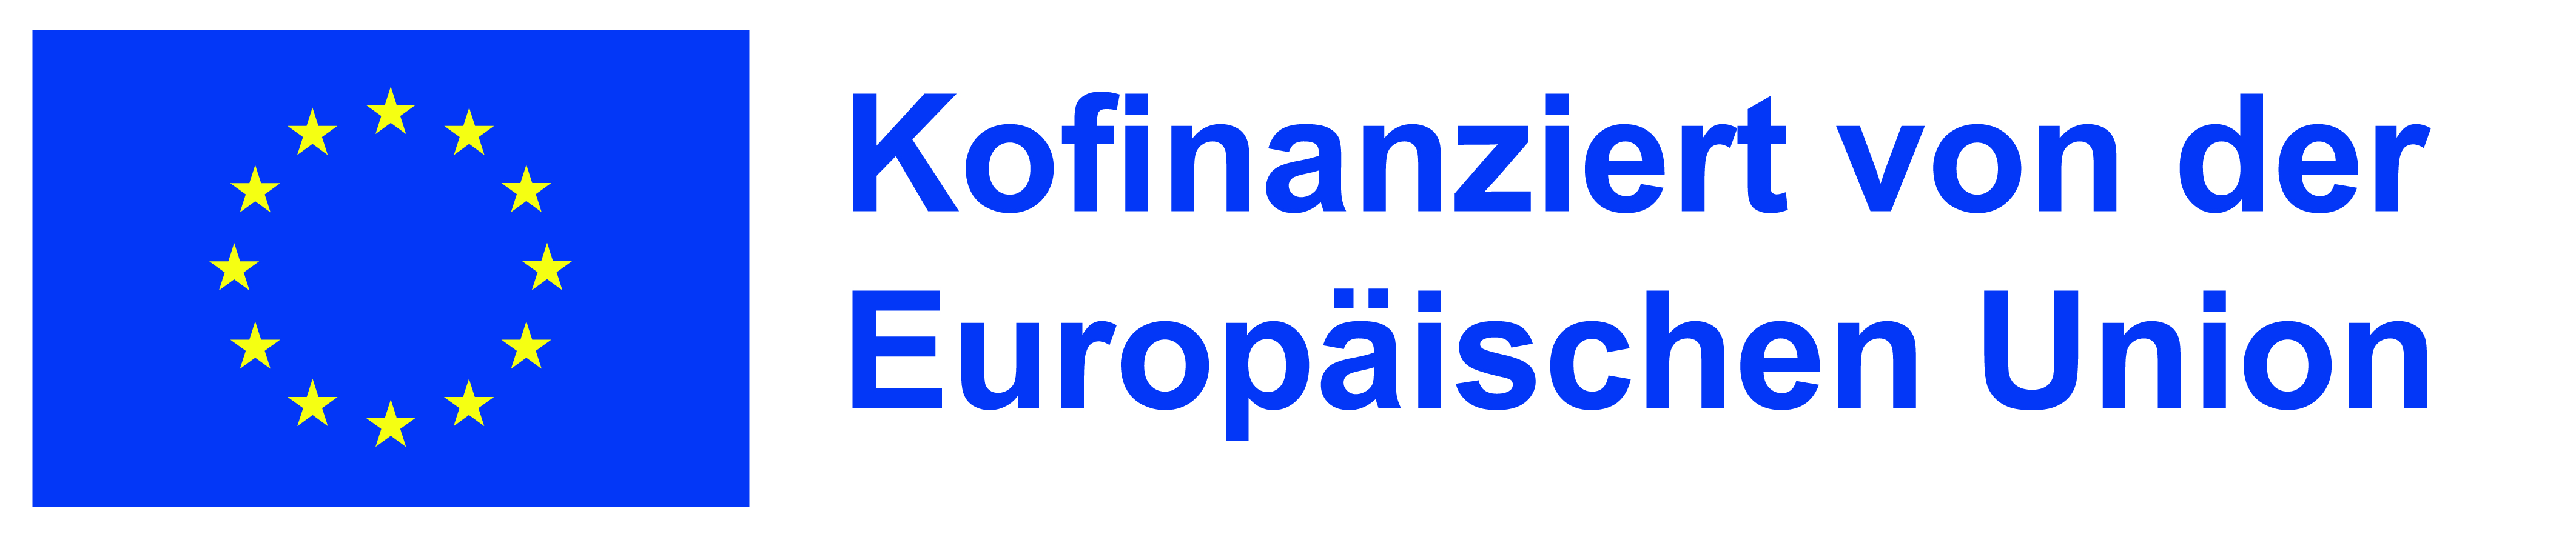 EU-Emblem "Kofinanziert von der Europäischen Union"